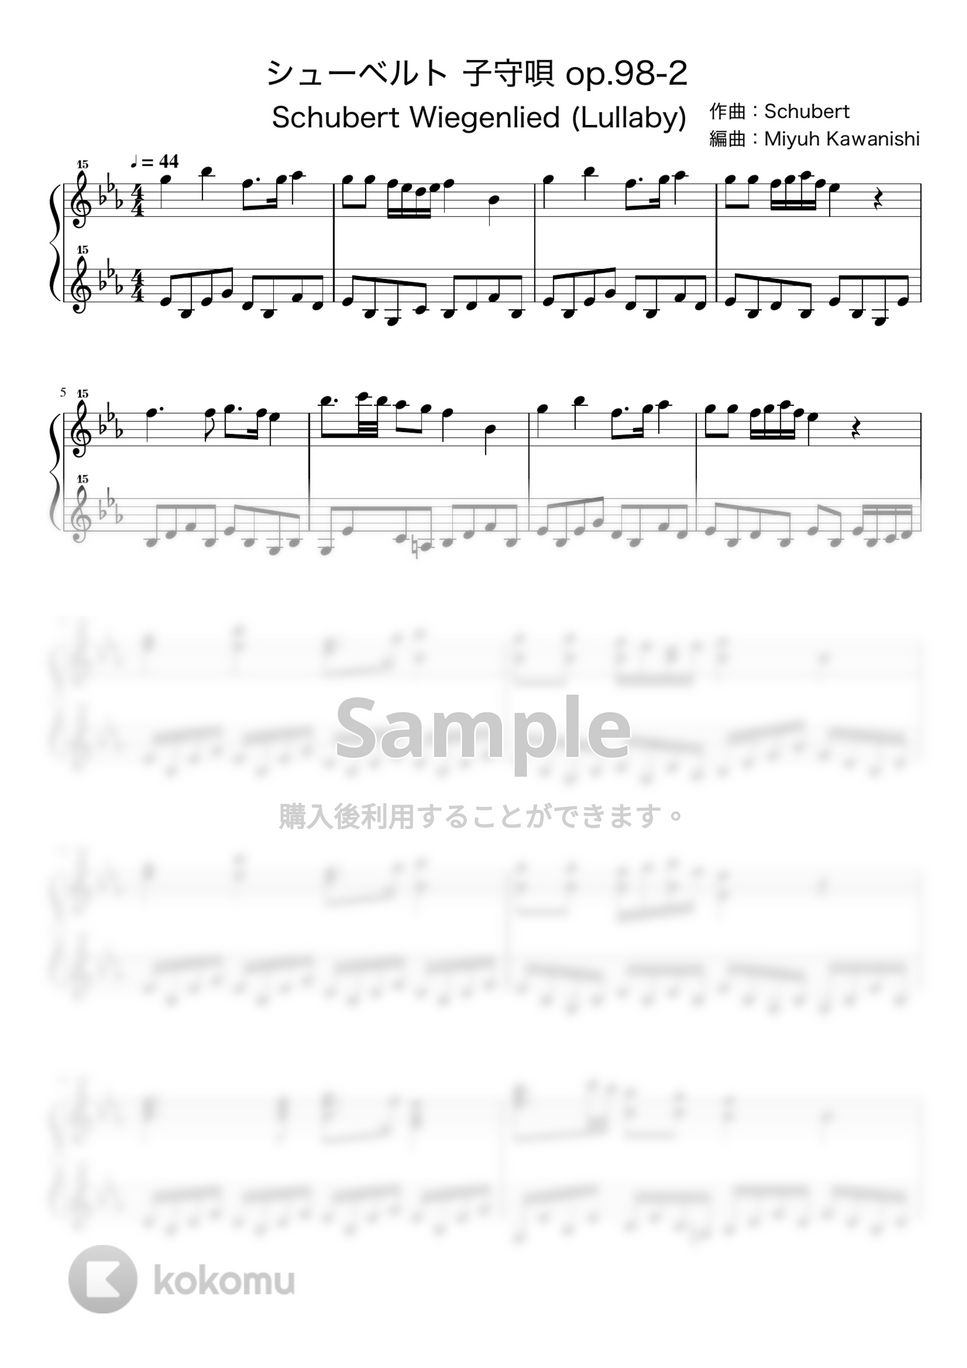 シューベルト - シューベルトの子守唄 op.98-2 (トイピアノ / クラシック / 32鍵盤) by 川西三裕